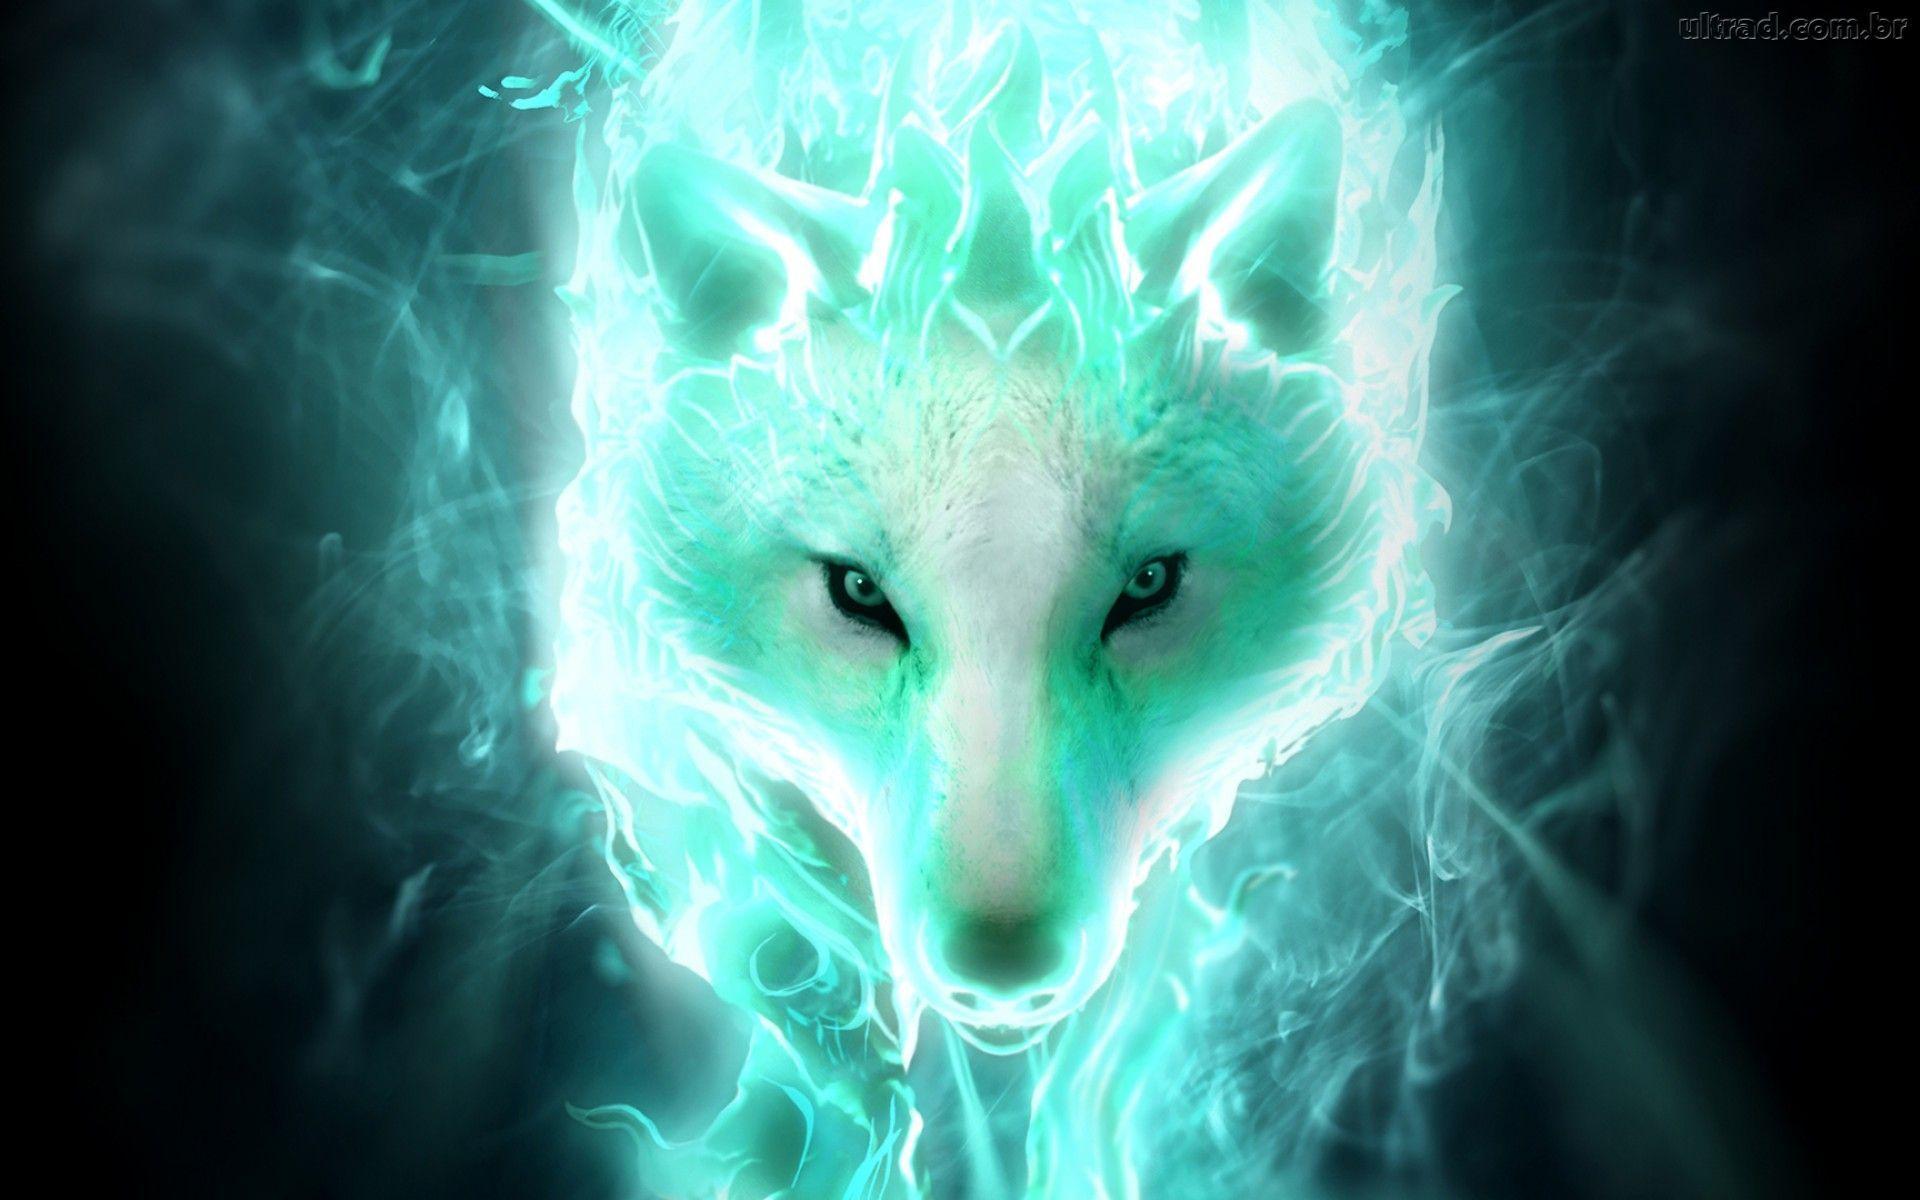 Ice Spirit Wolf Wallpaper Free Ice Spirit Wolf